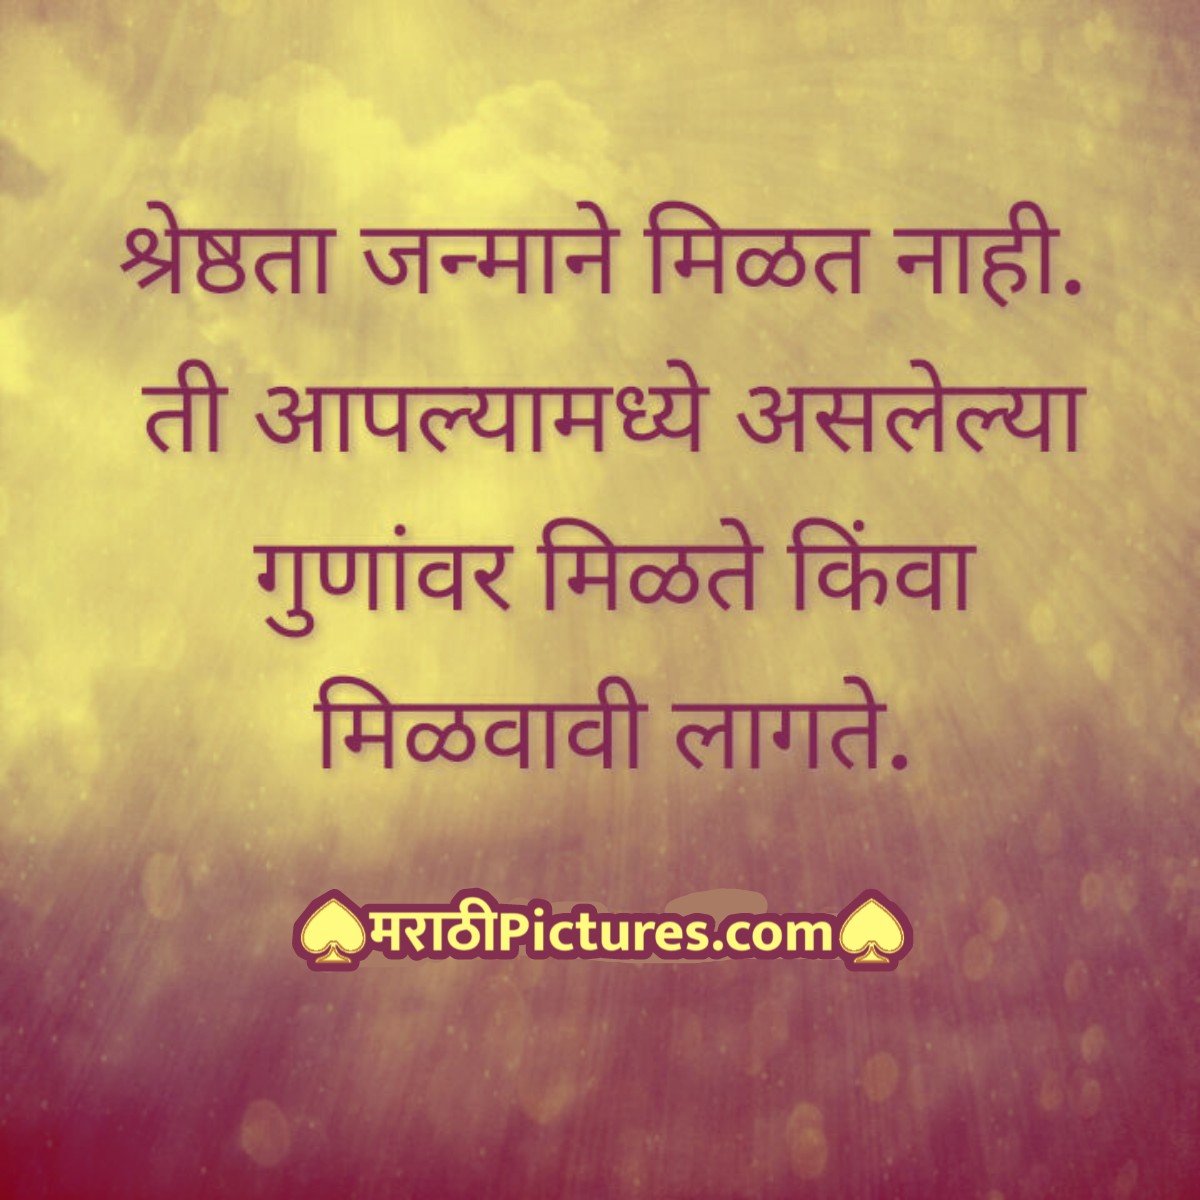 Shreshthata.. Marathi quotes on personality leadership